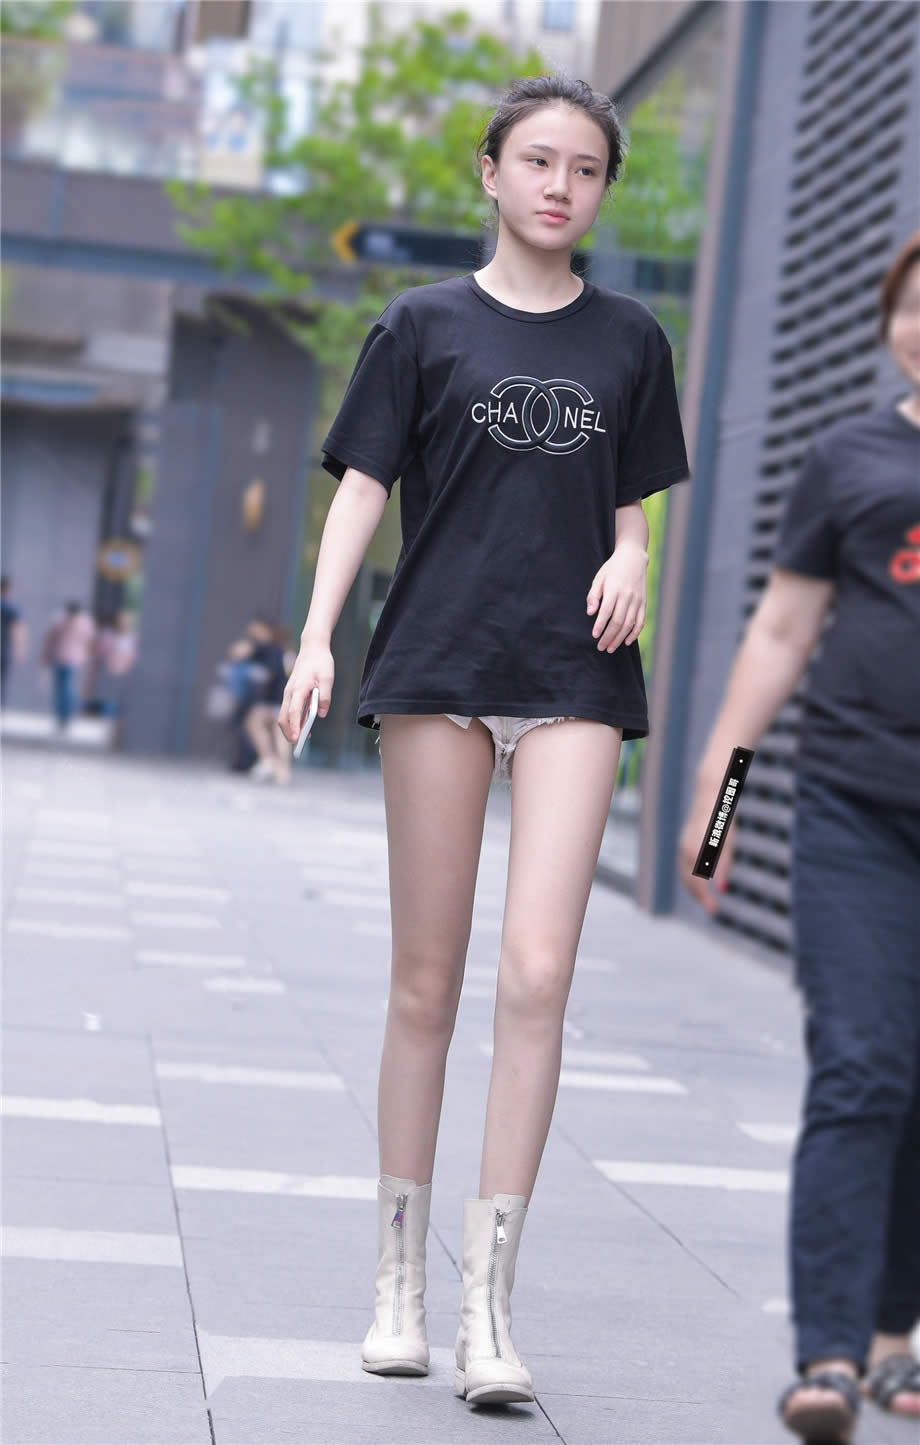 身高腿长的日本嫩模白净大长腿蜿蜒细长靓丽街拍图片